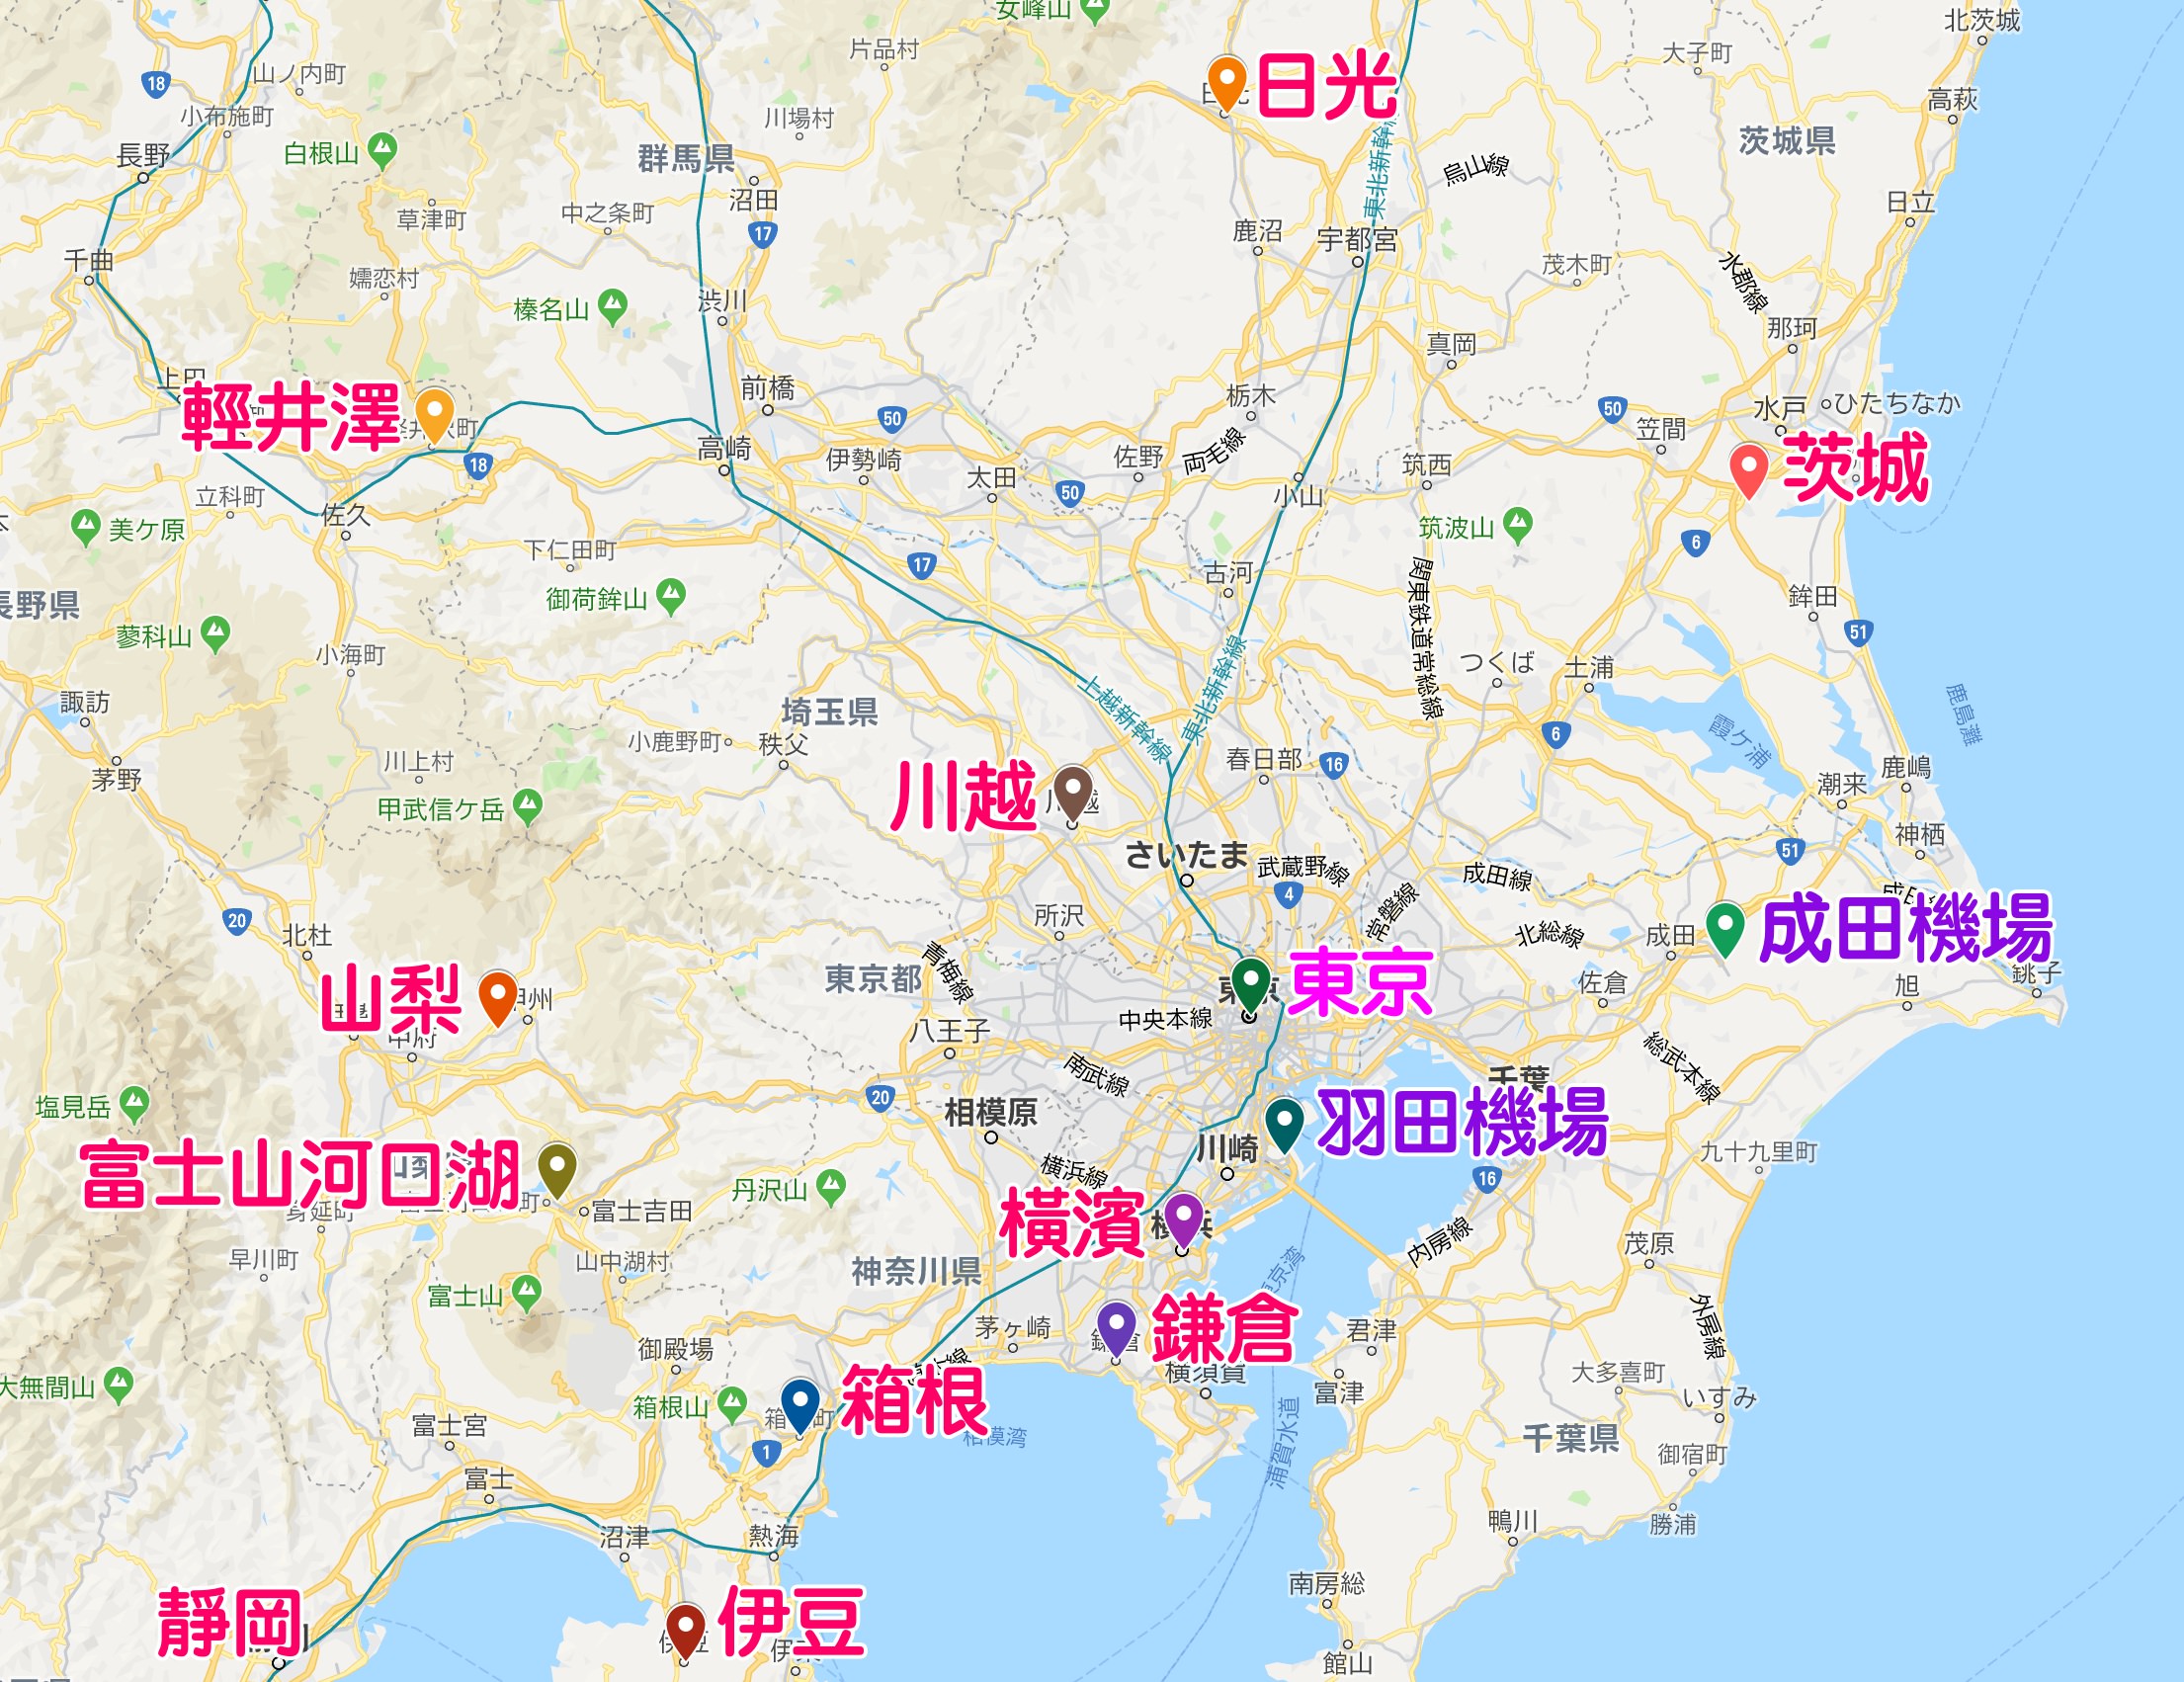 東京郊區景點地圖